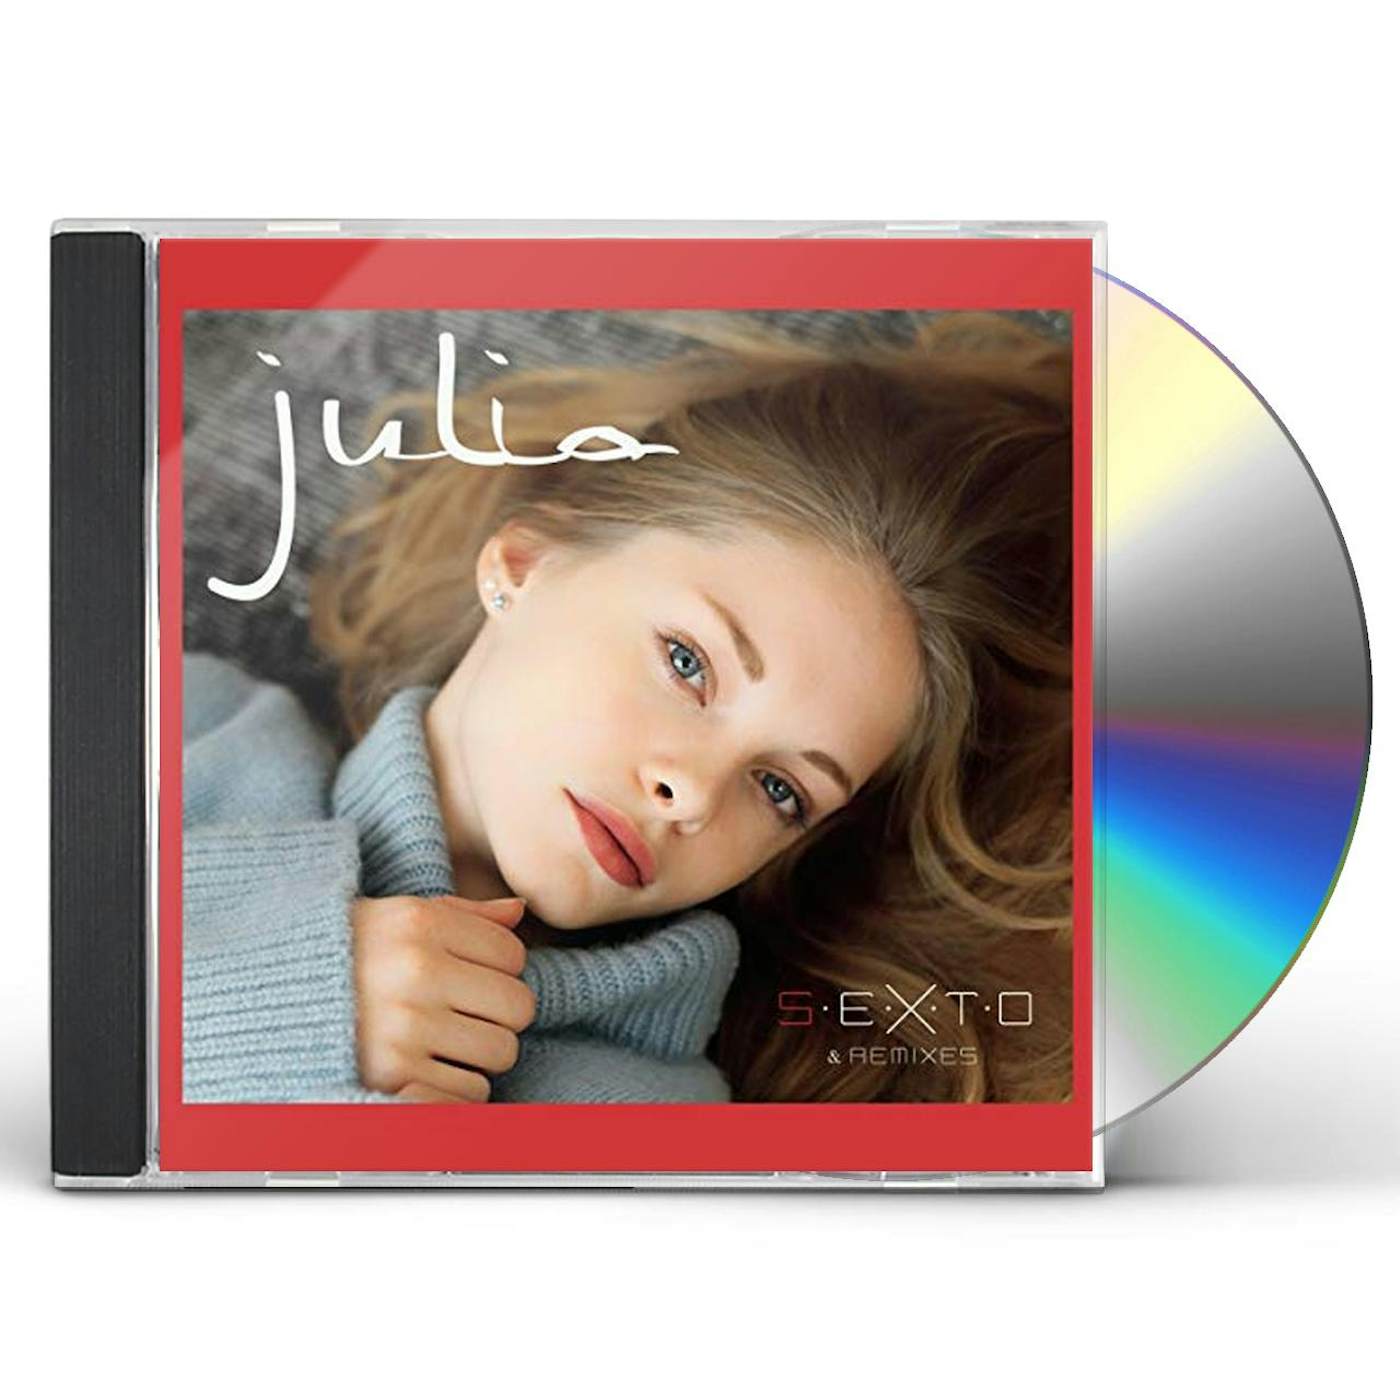 Julia S.E.X.T.O CD